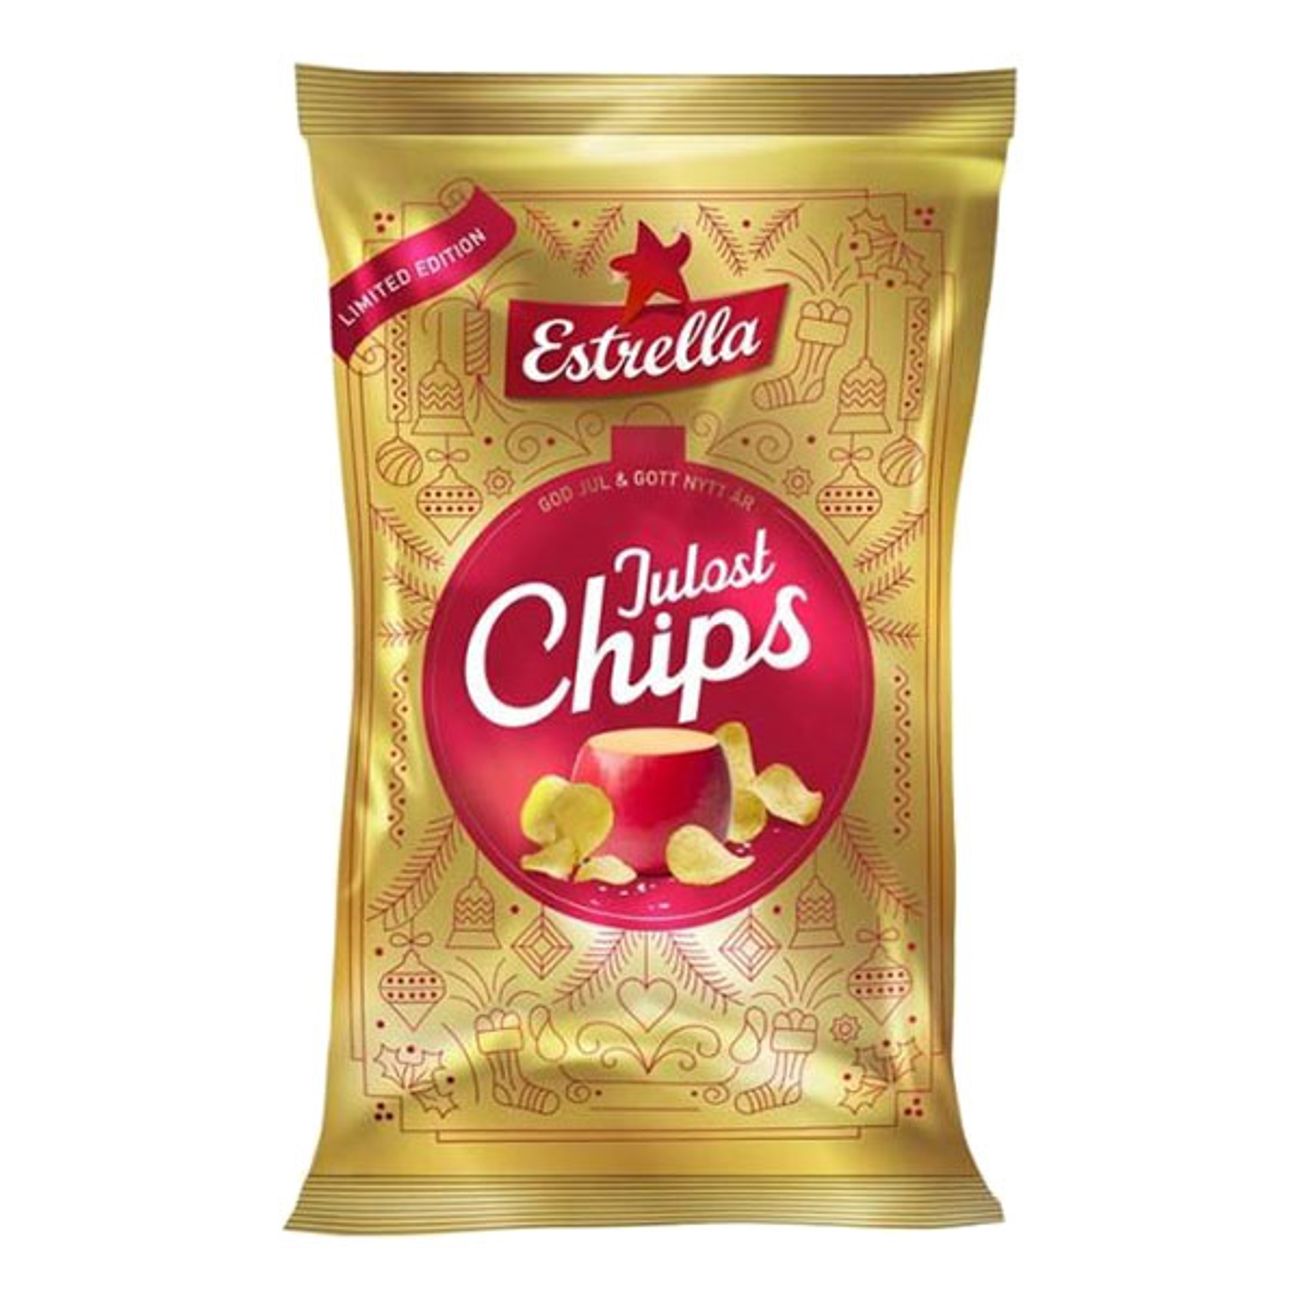 estrella-julost-chips-91513-1